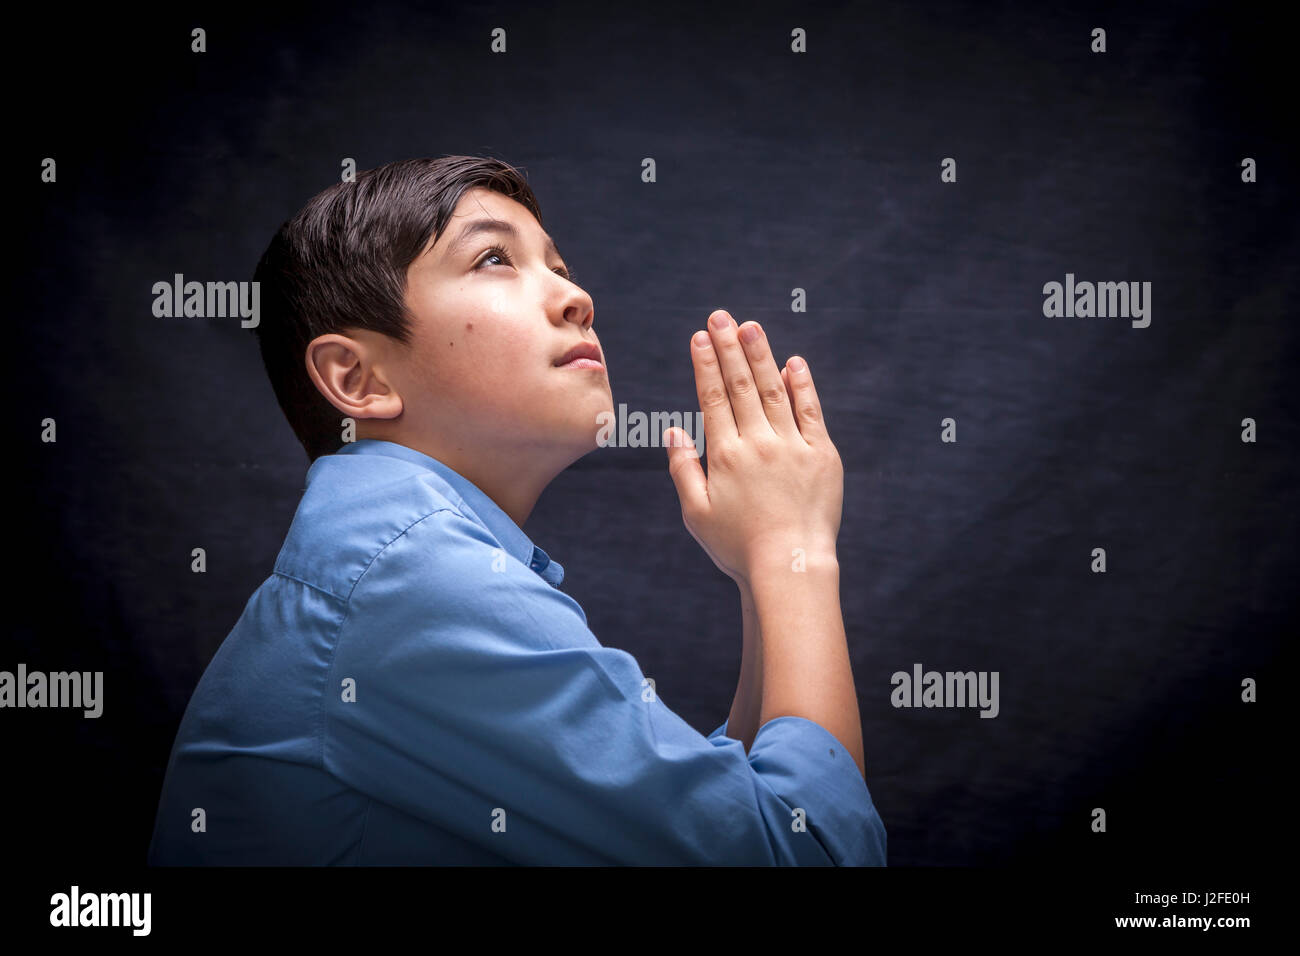 Un jeune garçon se replie ses mains et soulève sa tête dans la prière à Dieu. Banque D'Images